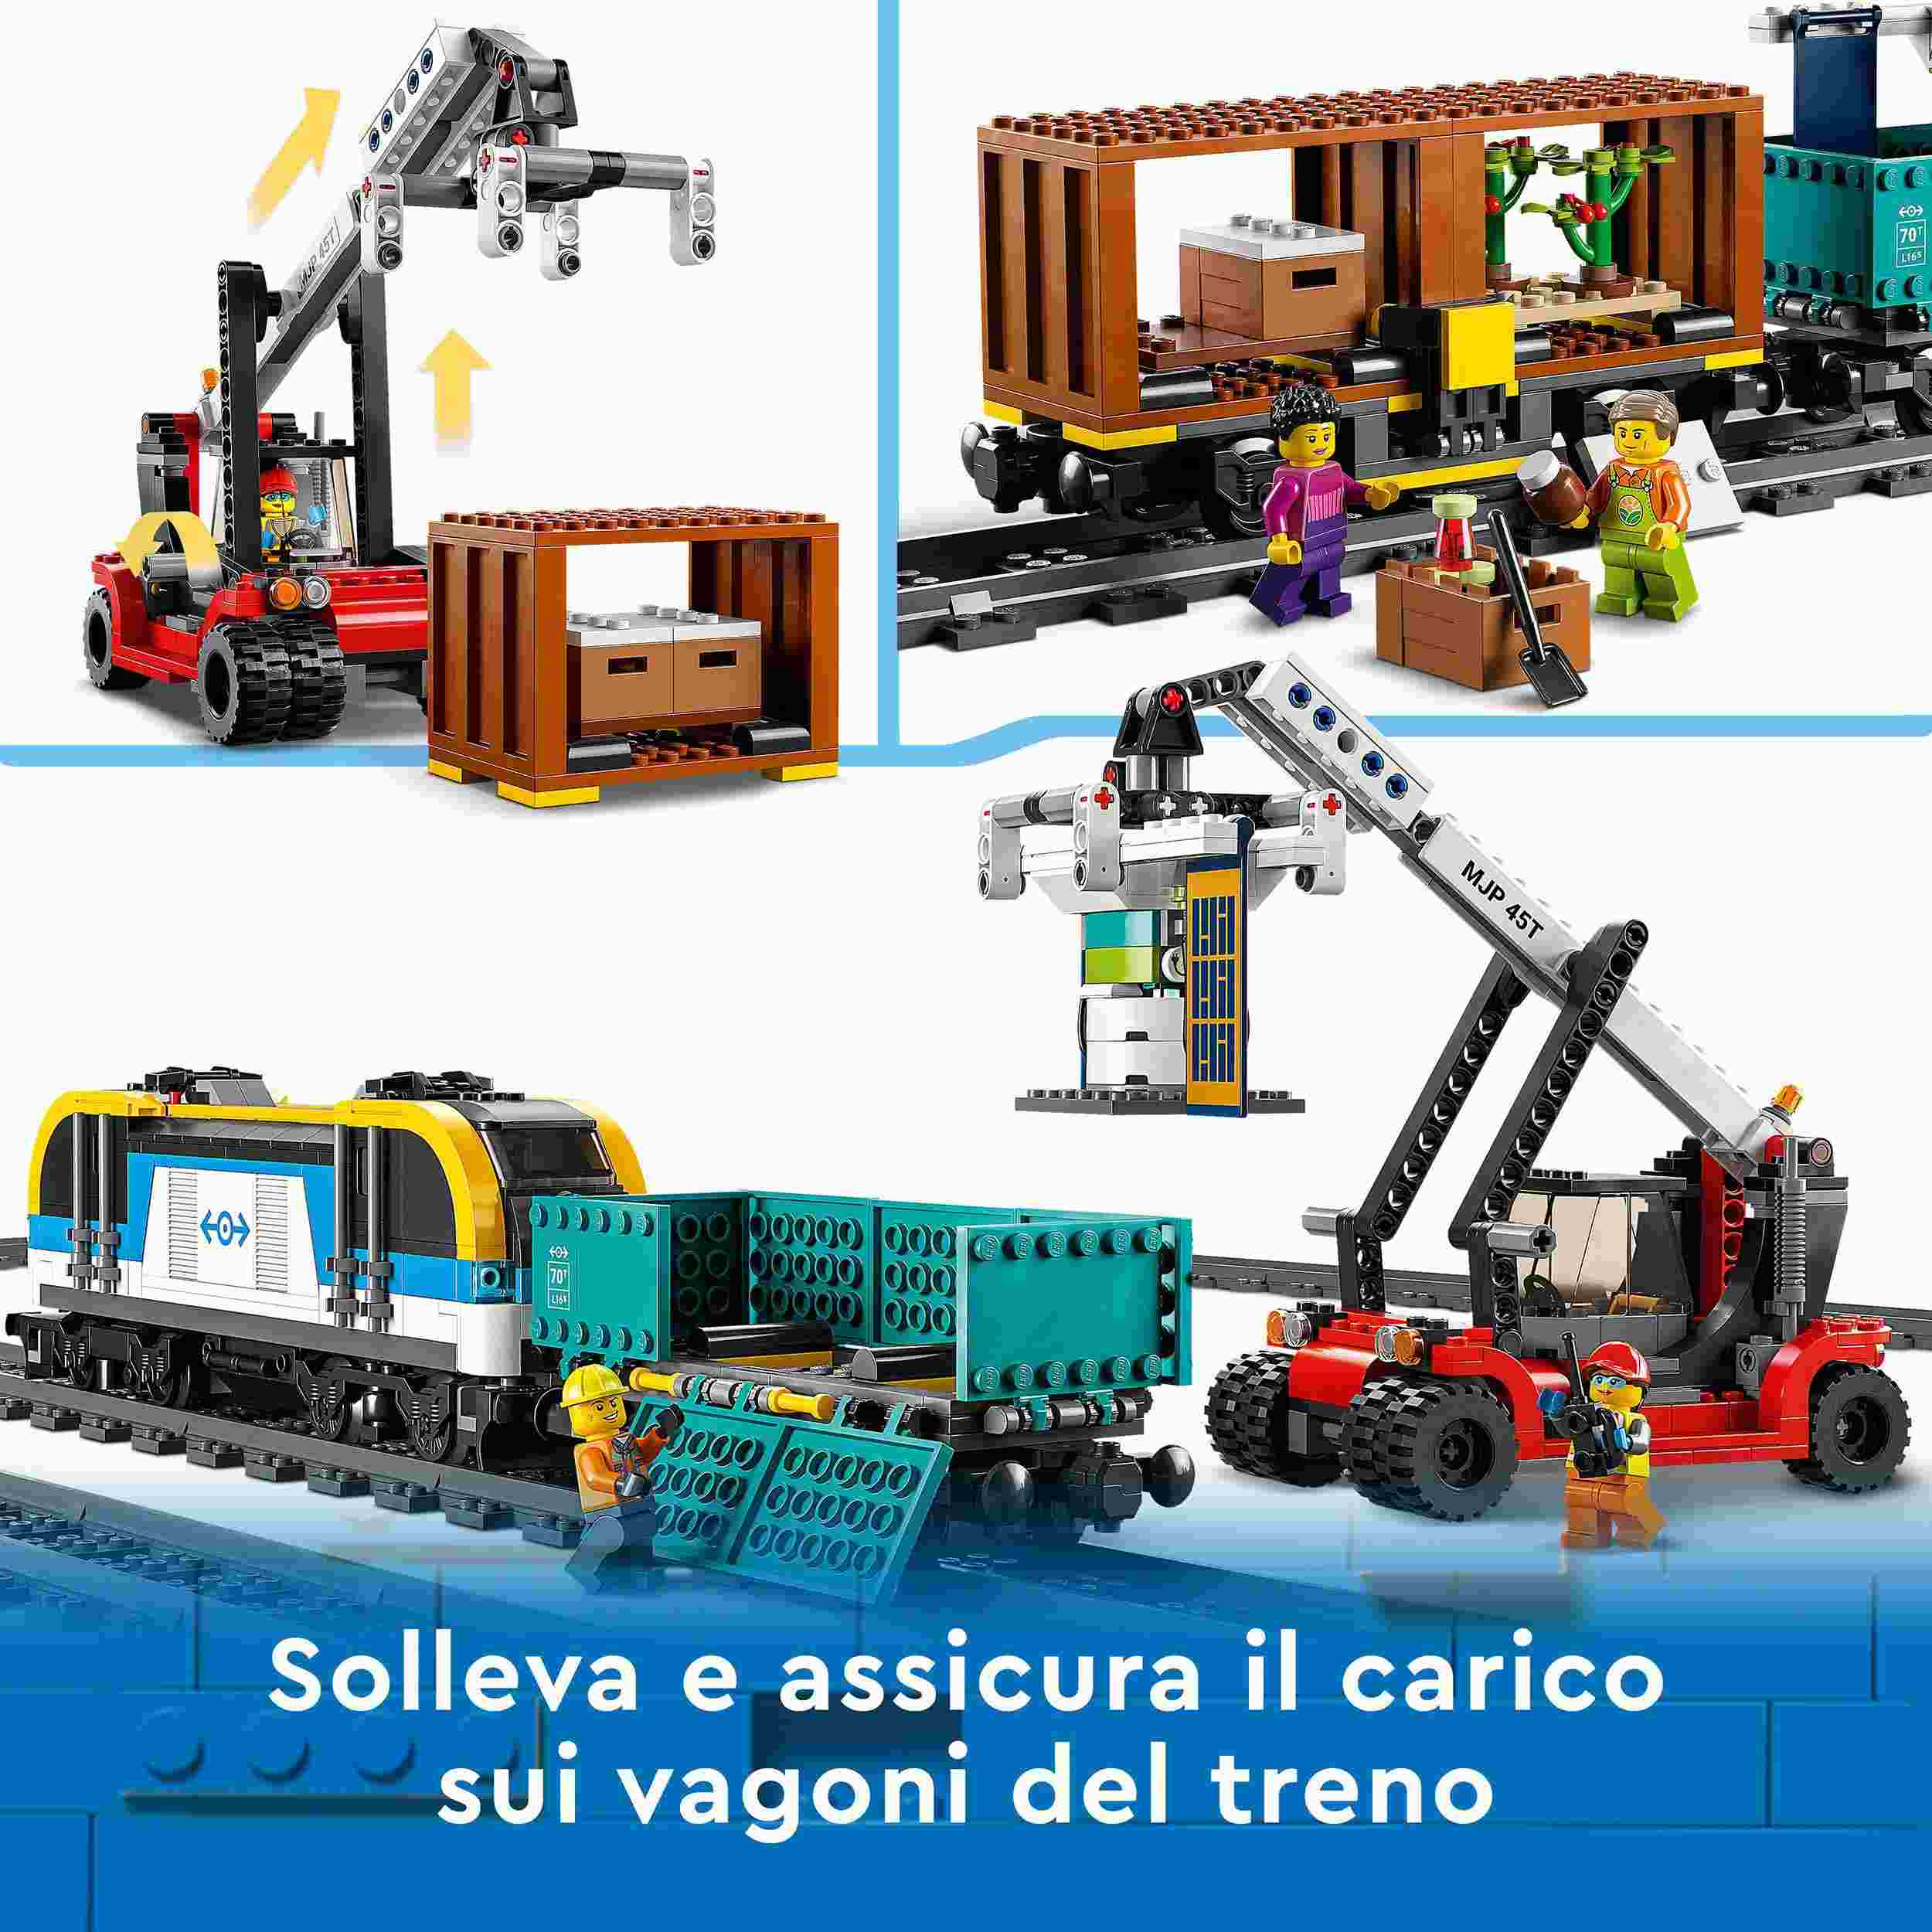 Lego city 60336 treno merci, locomotiva telecomandata con suoni e binari, gru giocattolo, giochi per bambini dai 7 anni - LEGO CITY, Lego